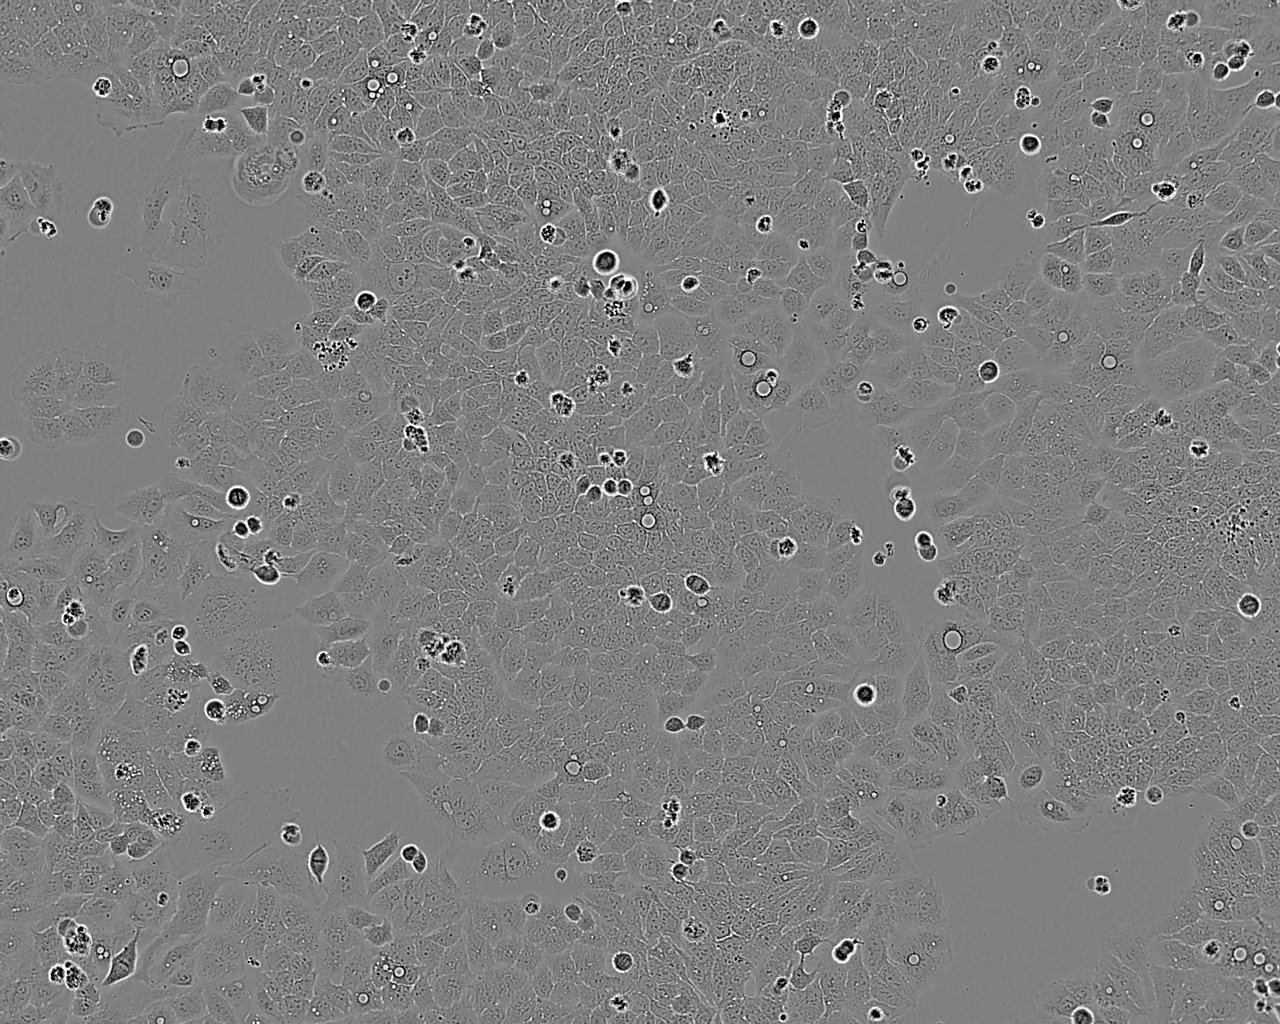 NCI-H1623 人非小细胞肺癌细胞系